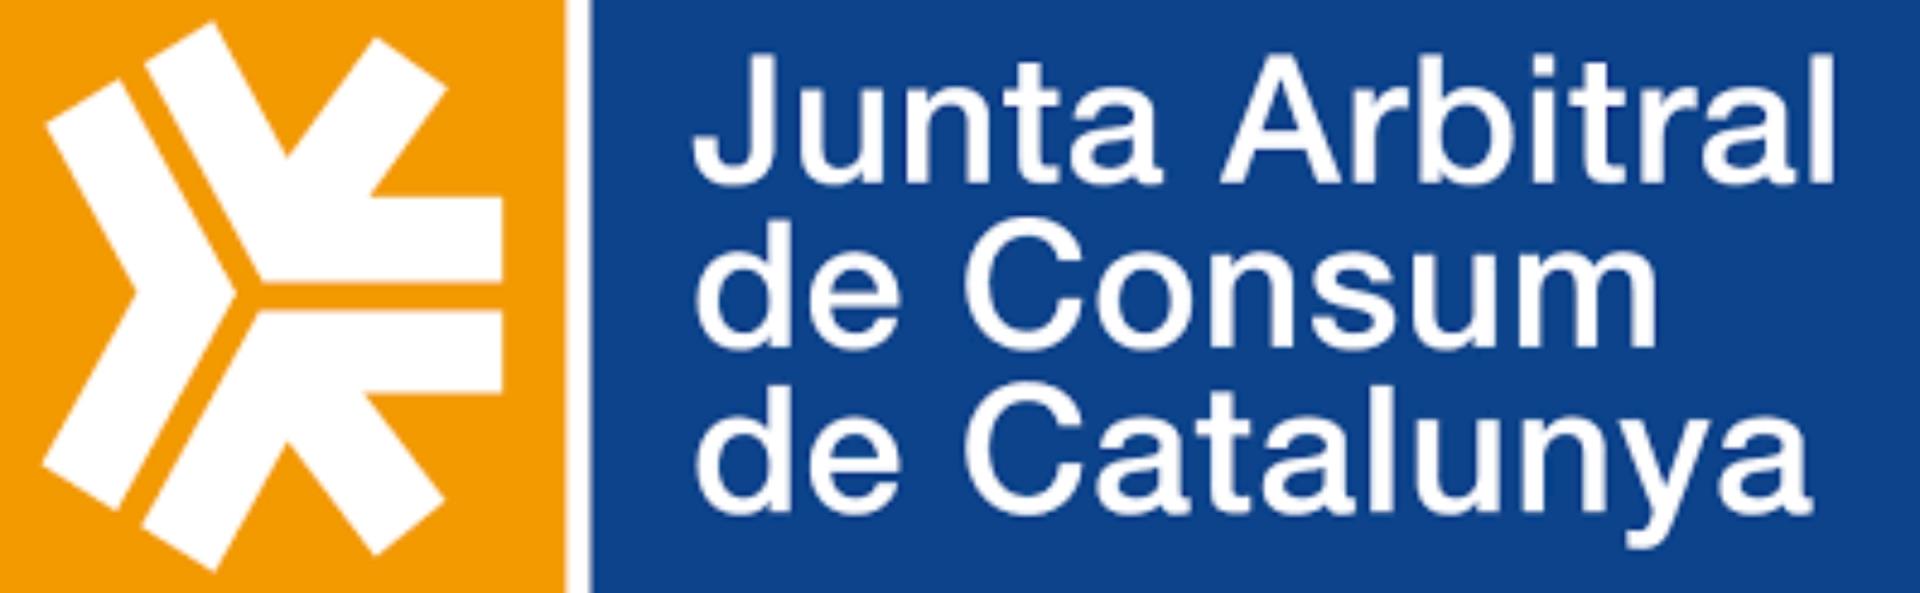 Logo Jacc Junt Arbitral de consum